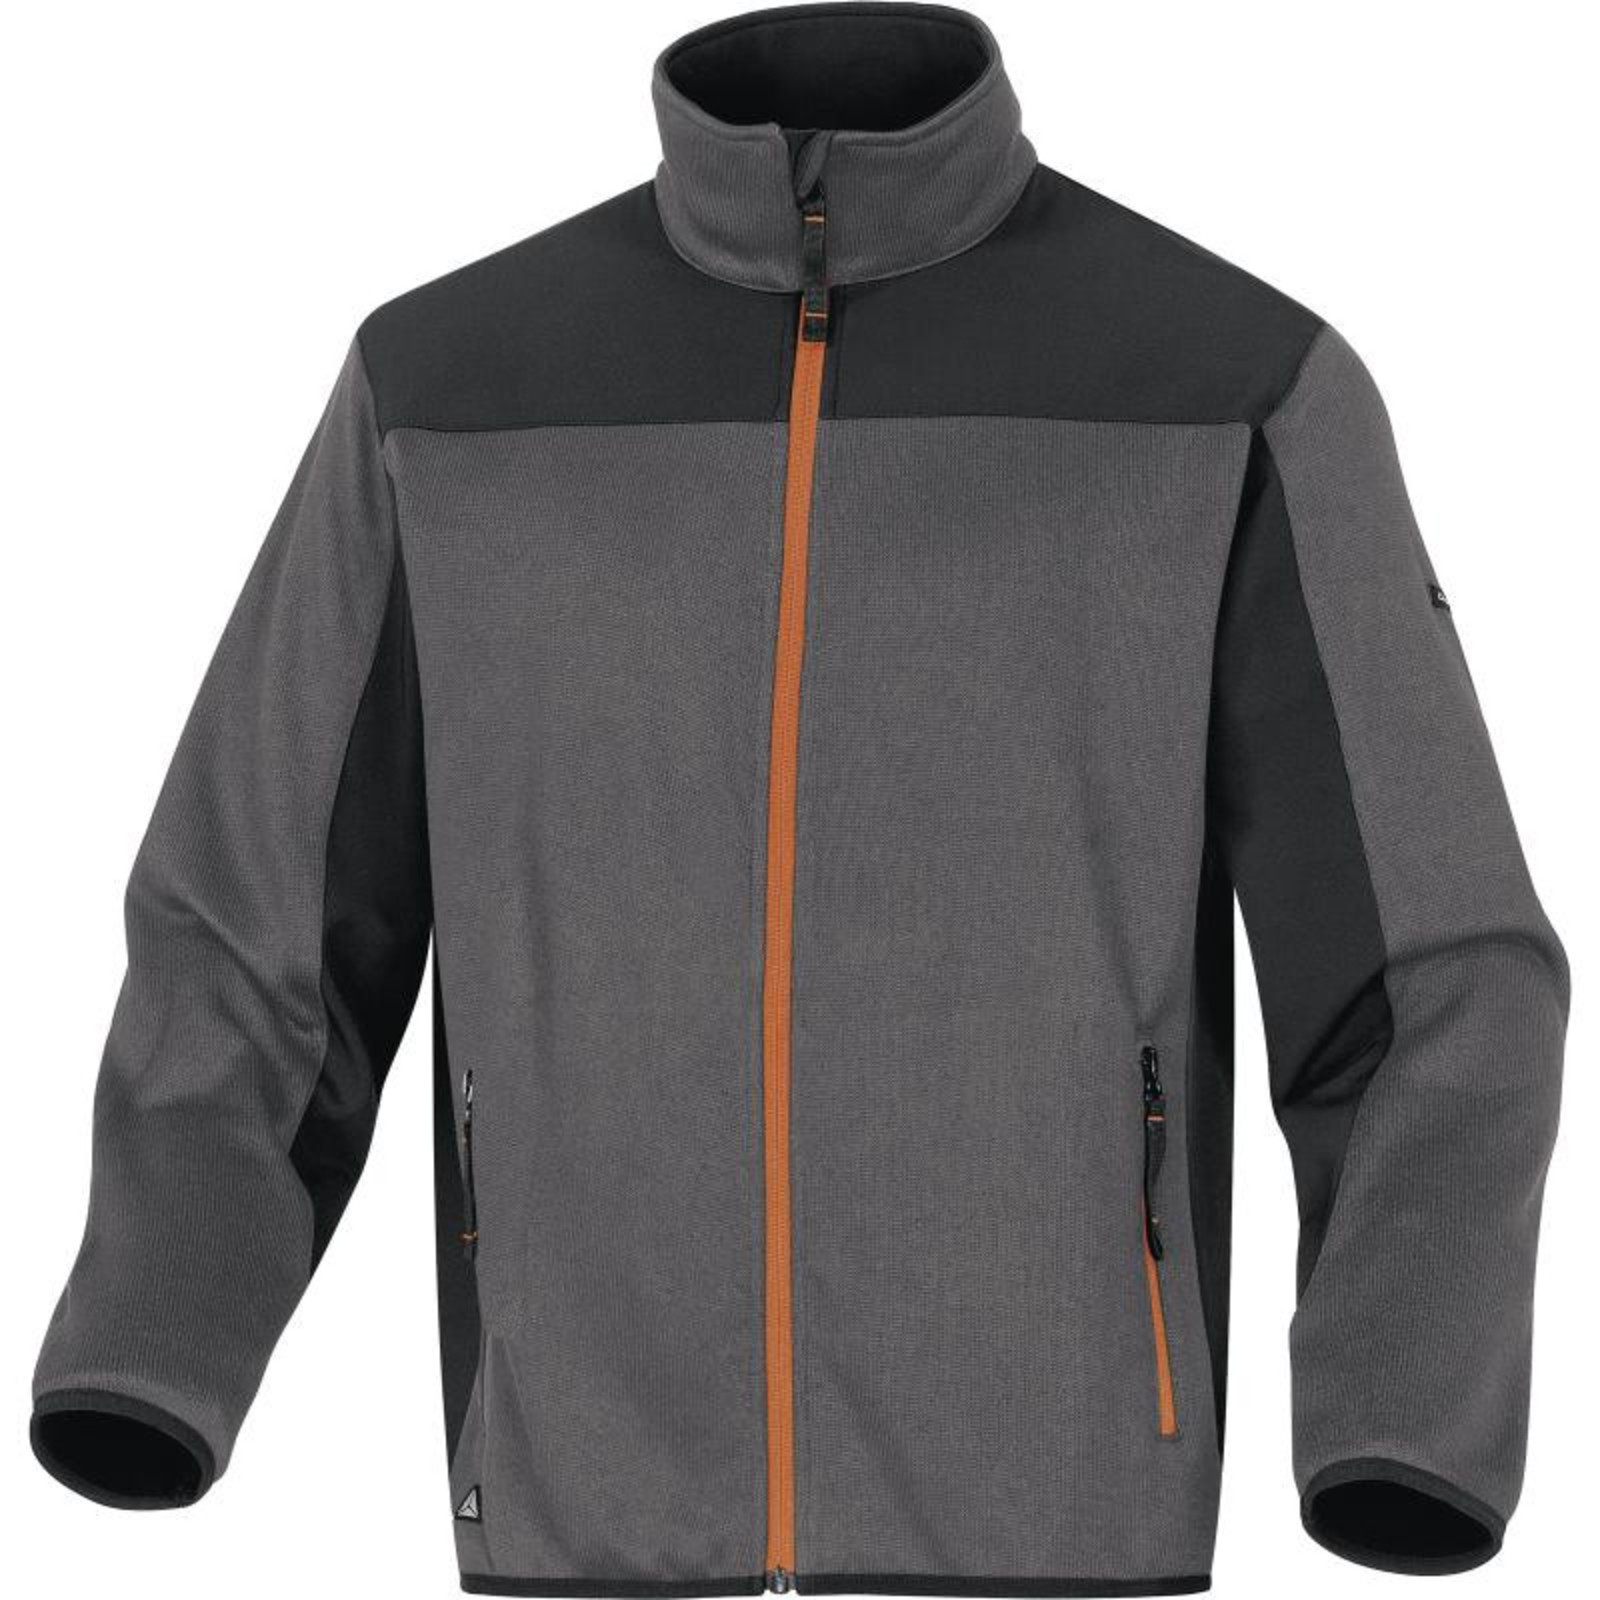 Softshellovo-pleteninová bunda Delta Plus Beaver - veľkosť: L, farba: sivá/oranžová